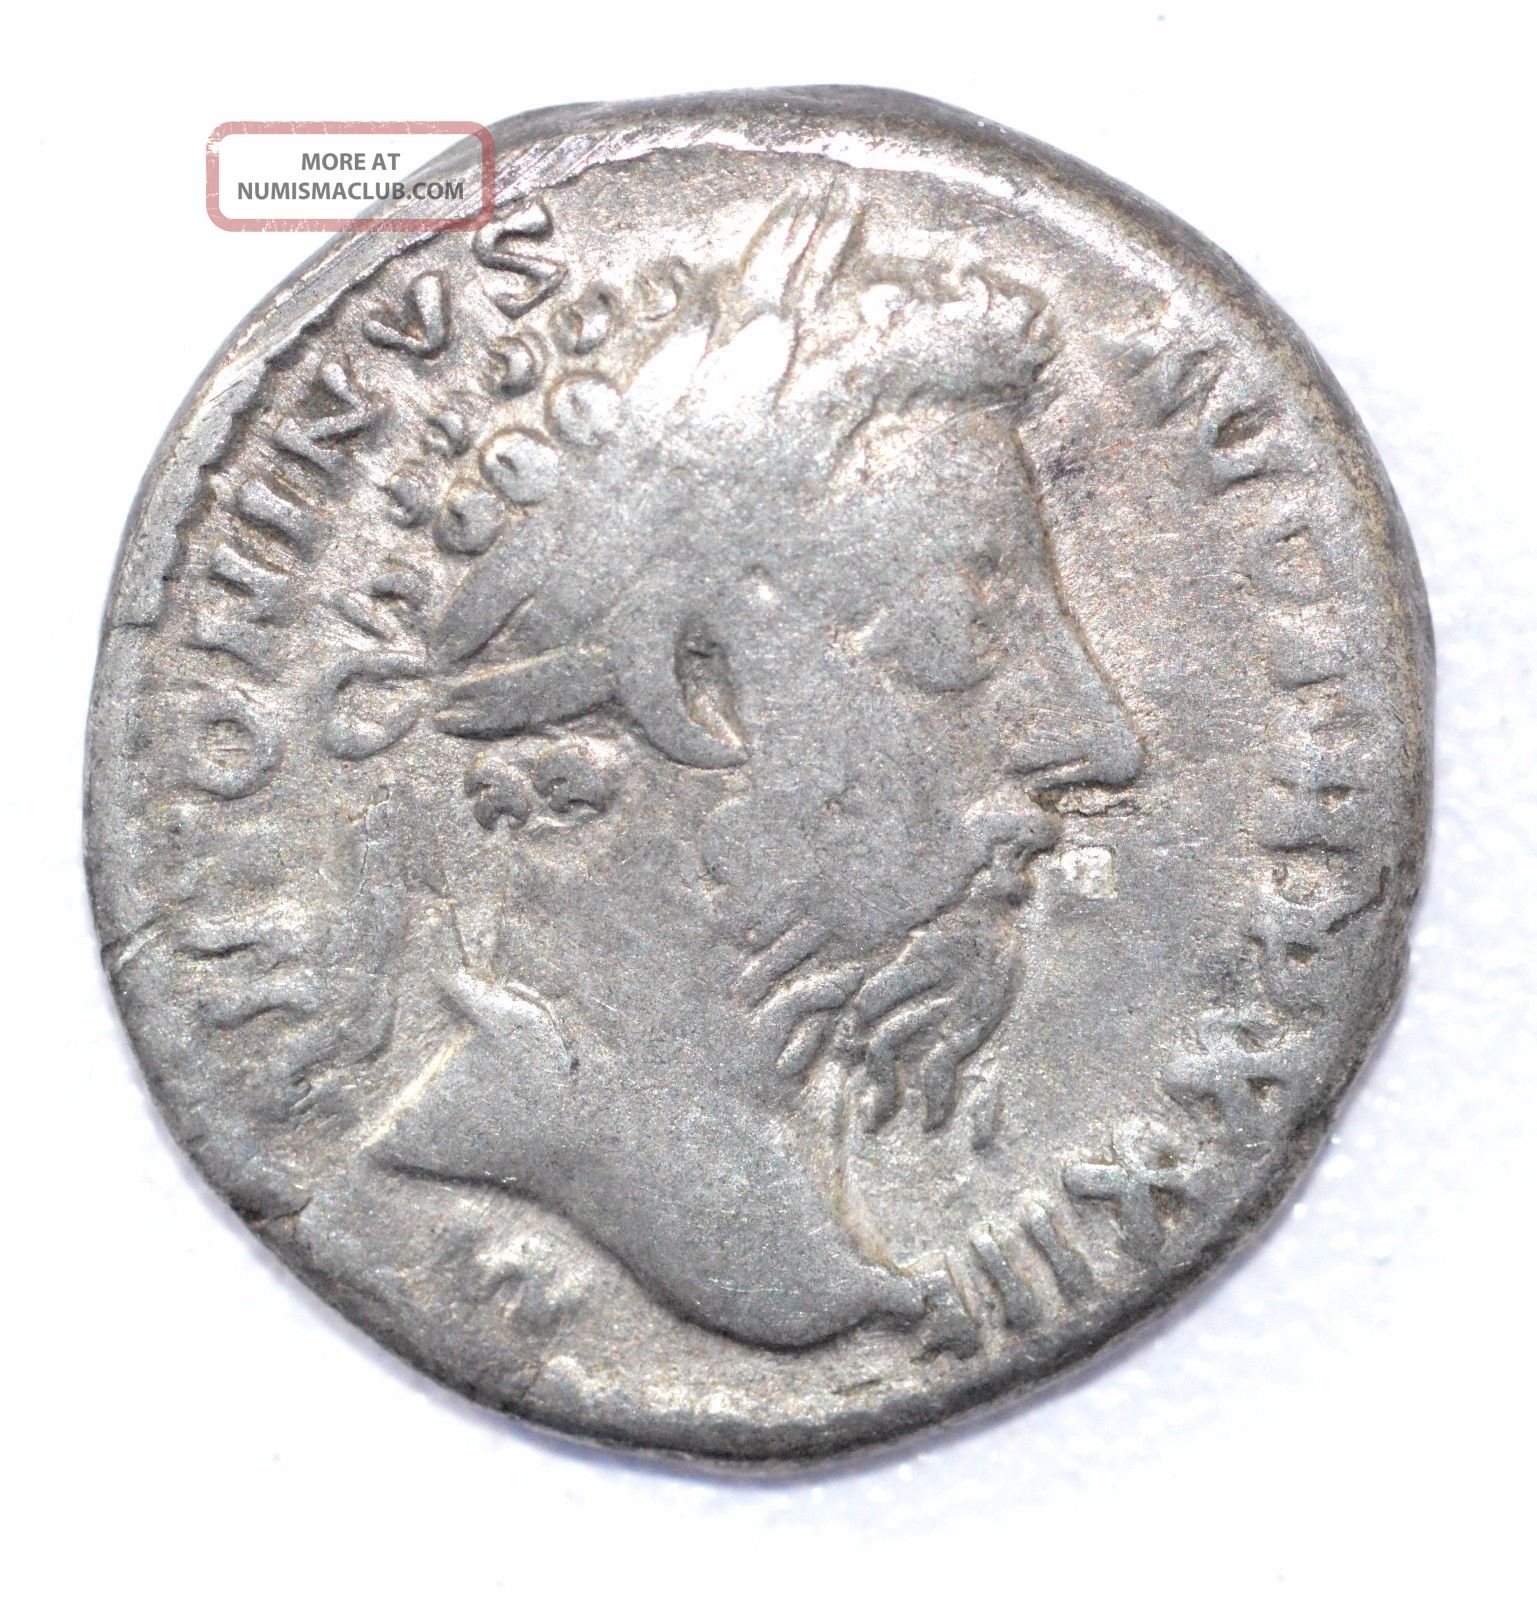 Authentic Marcus Aurelius, Silver Denarius, Roman Coin, Rv. Salus - A899